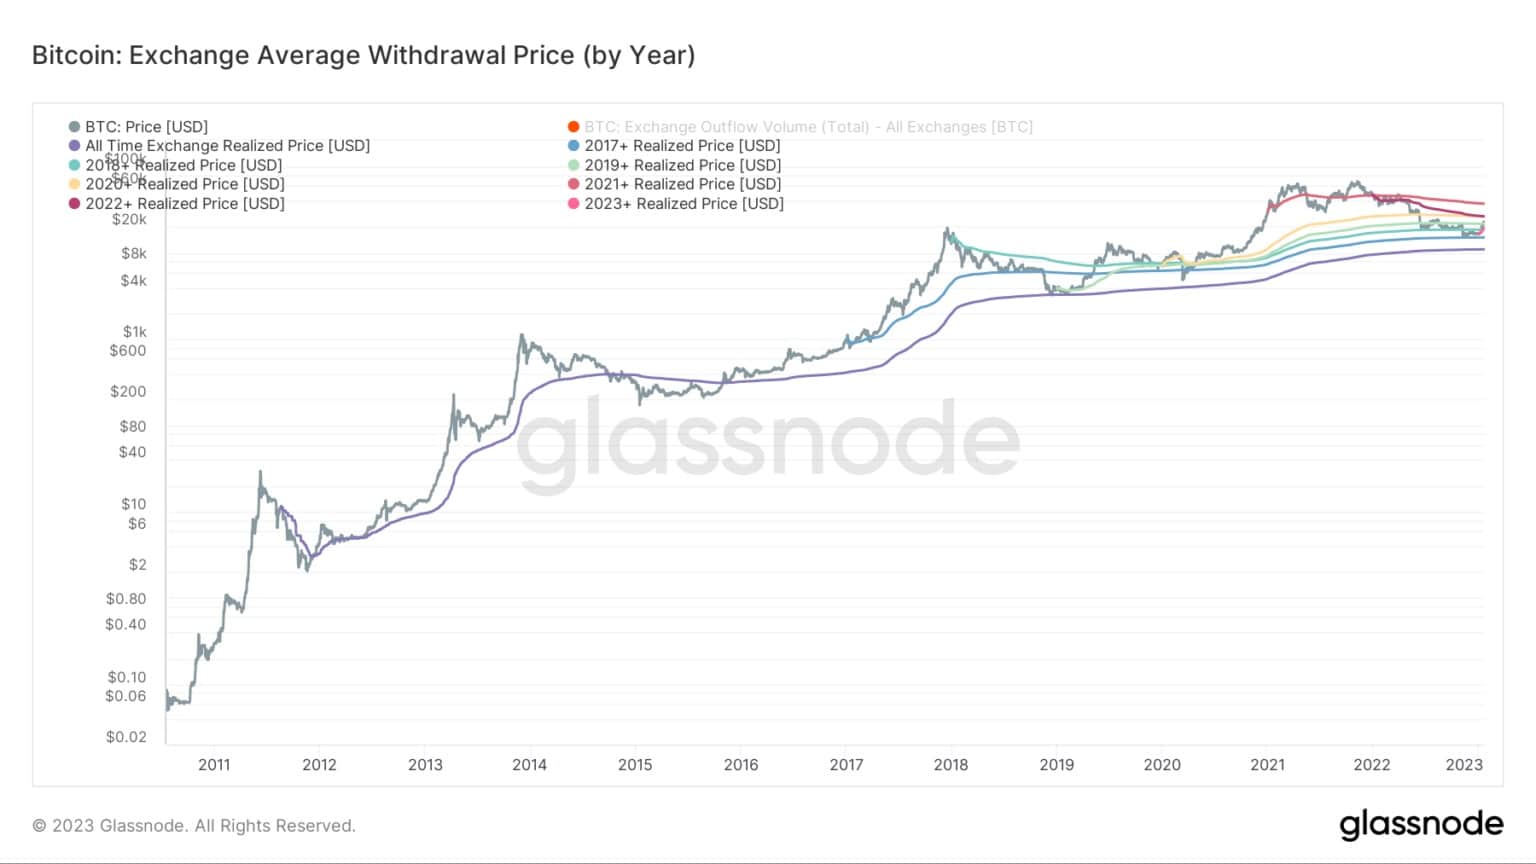 Graphique montrant le prix moyen de retrait de Bitcoin par année (Source : Glassnode)